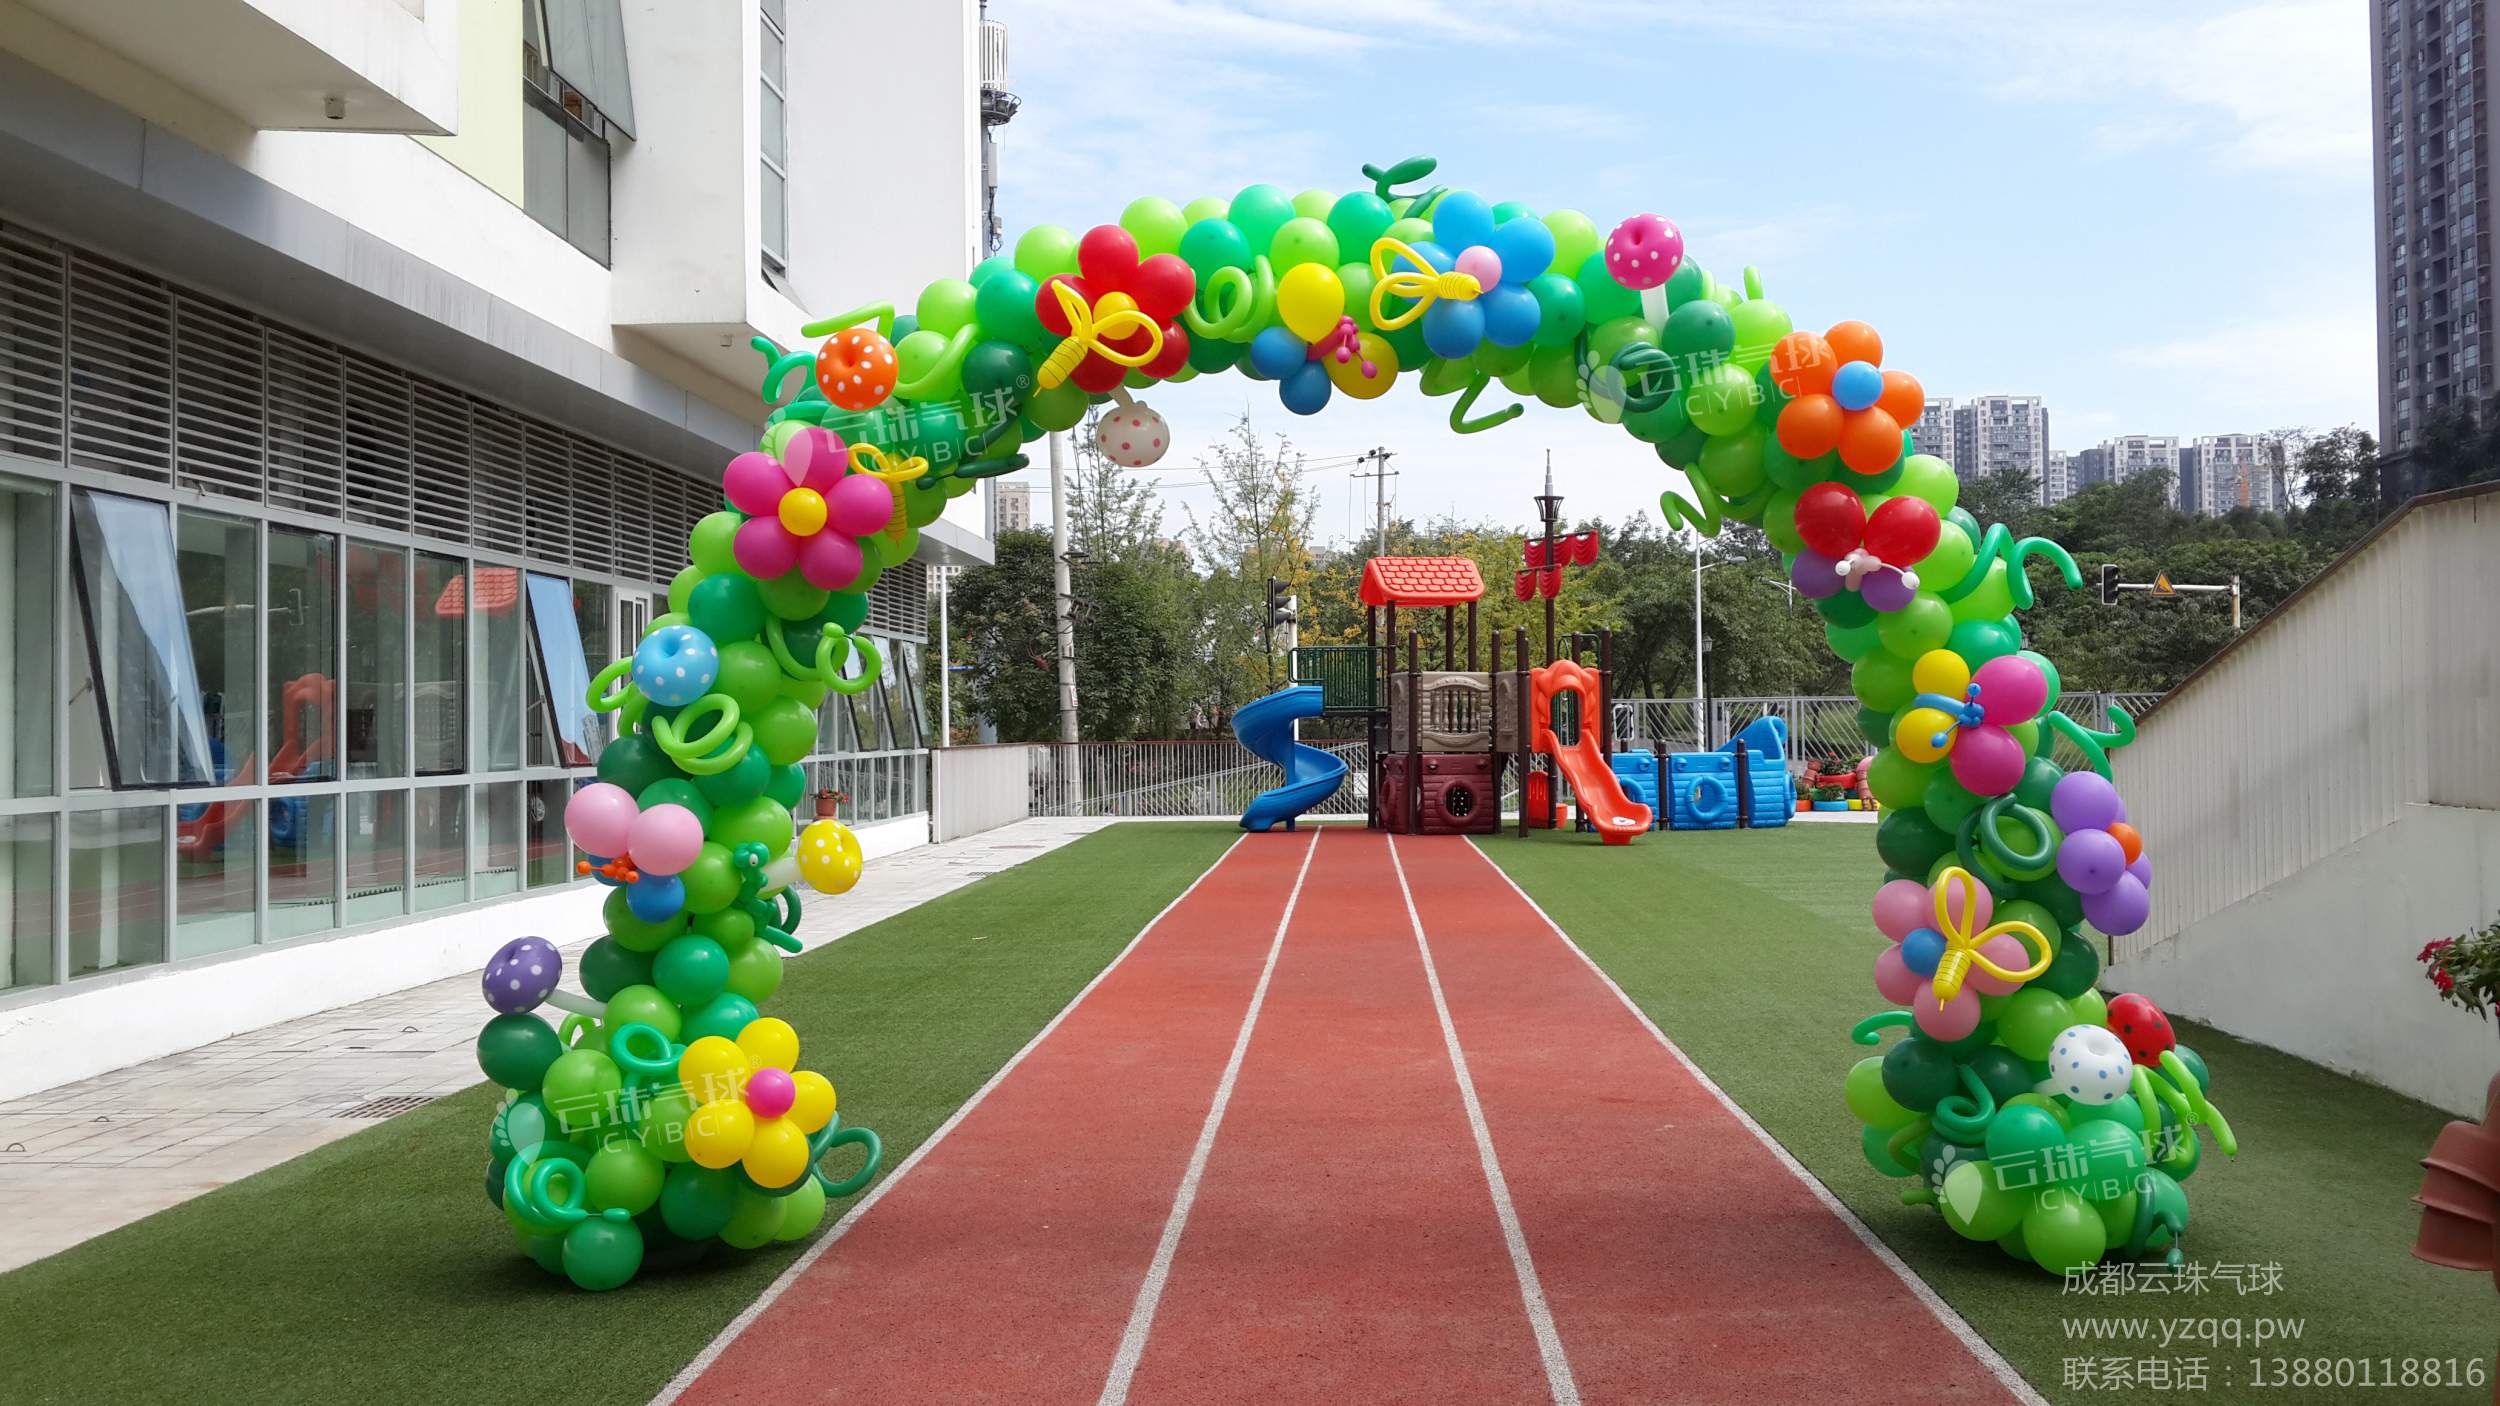 供应气球拱门/气球造型拱门/气球装饰/成都气球装饰造型